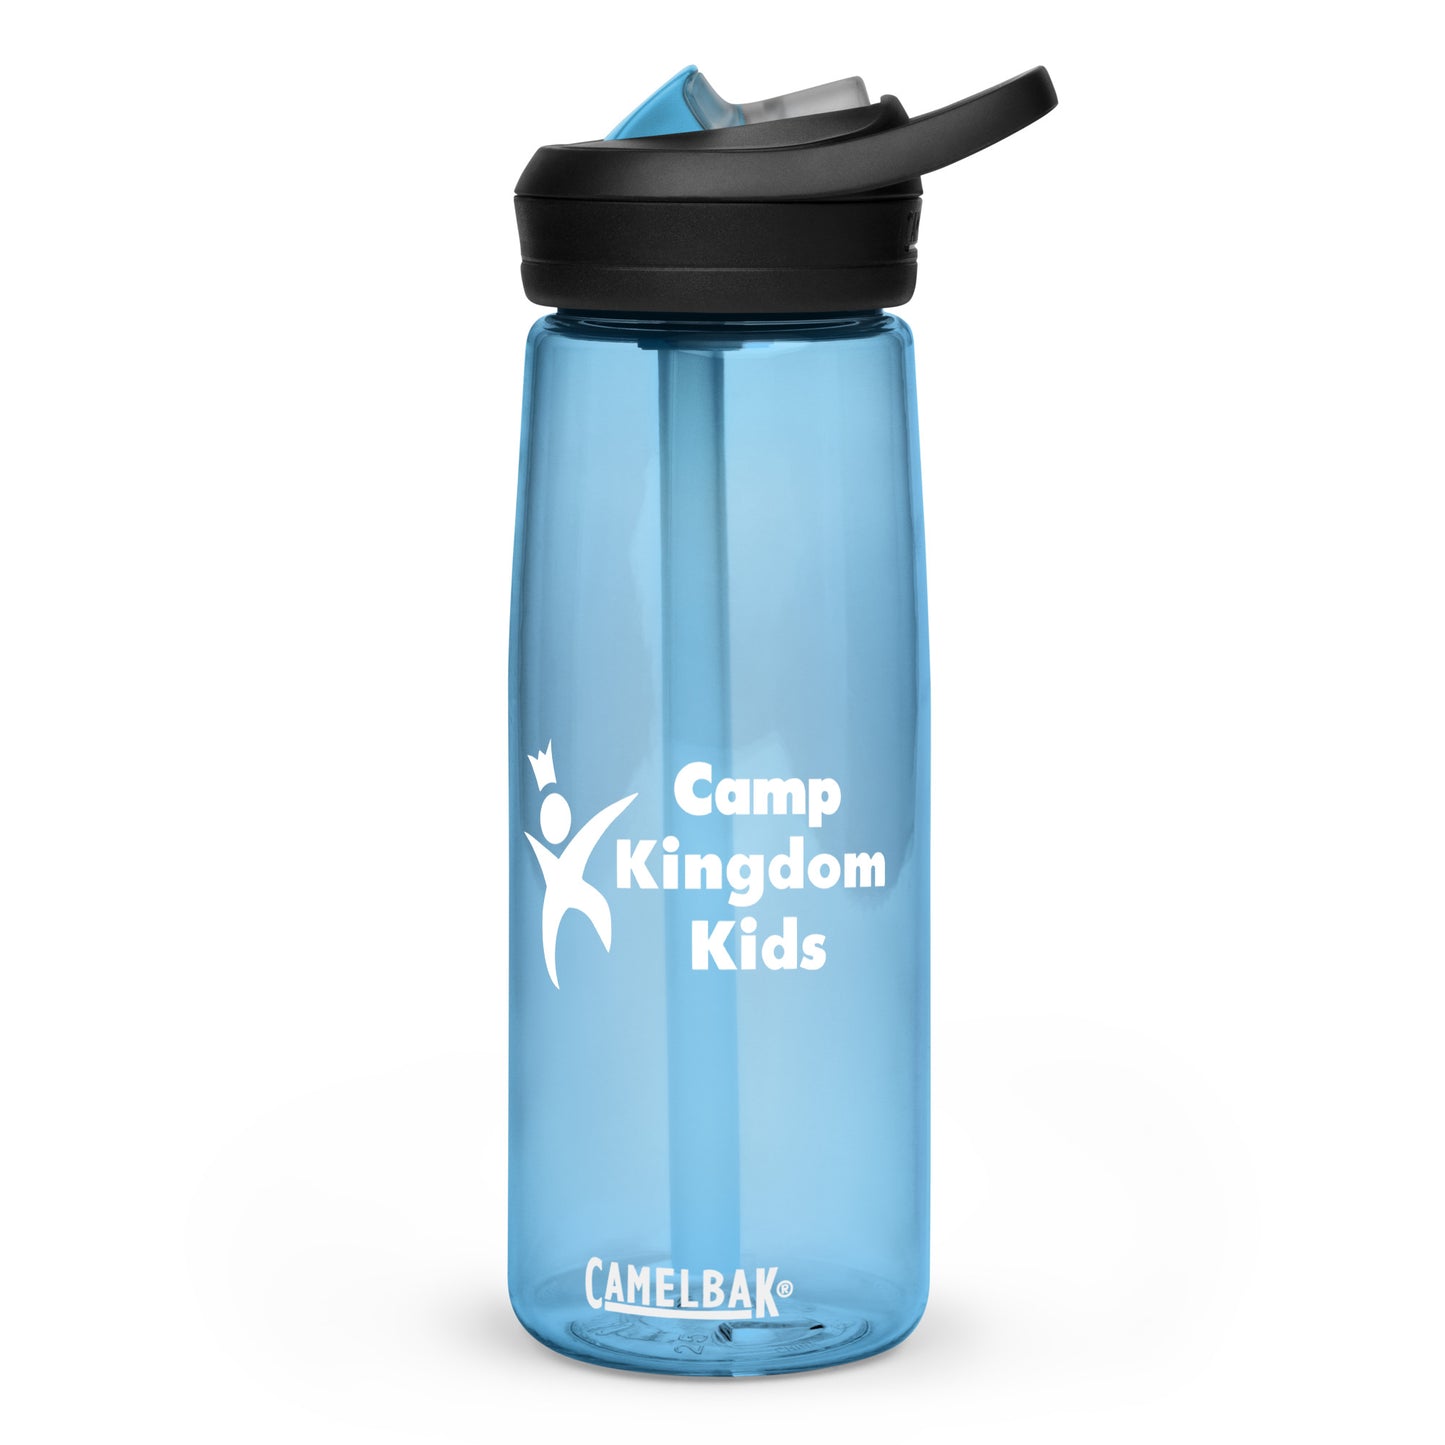 Camp Kingdom Kids Eddy Camelbak water bottle